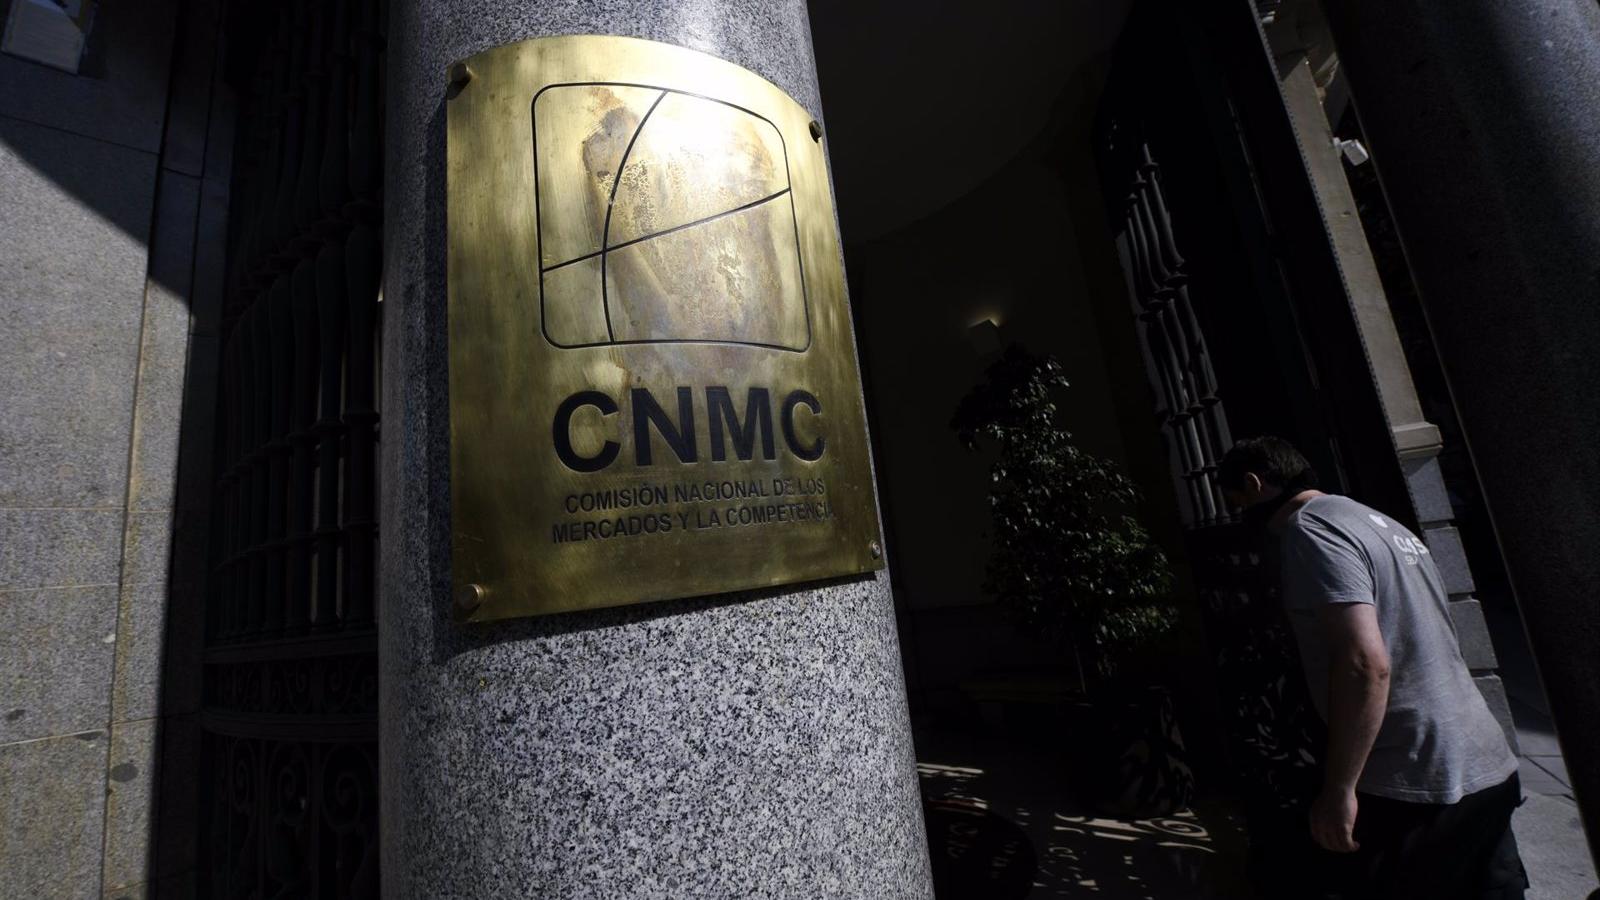 La CNMC multa a 12 empresas con 61 millones, entre ellas Acciona, ACS, OHL, Sacyr, Ferrovial y FCC